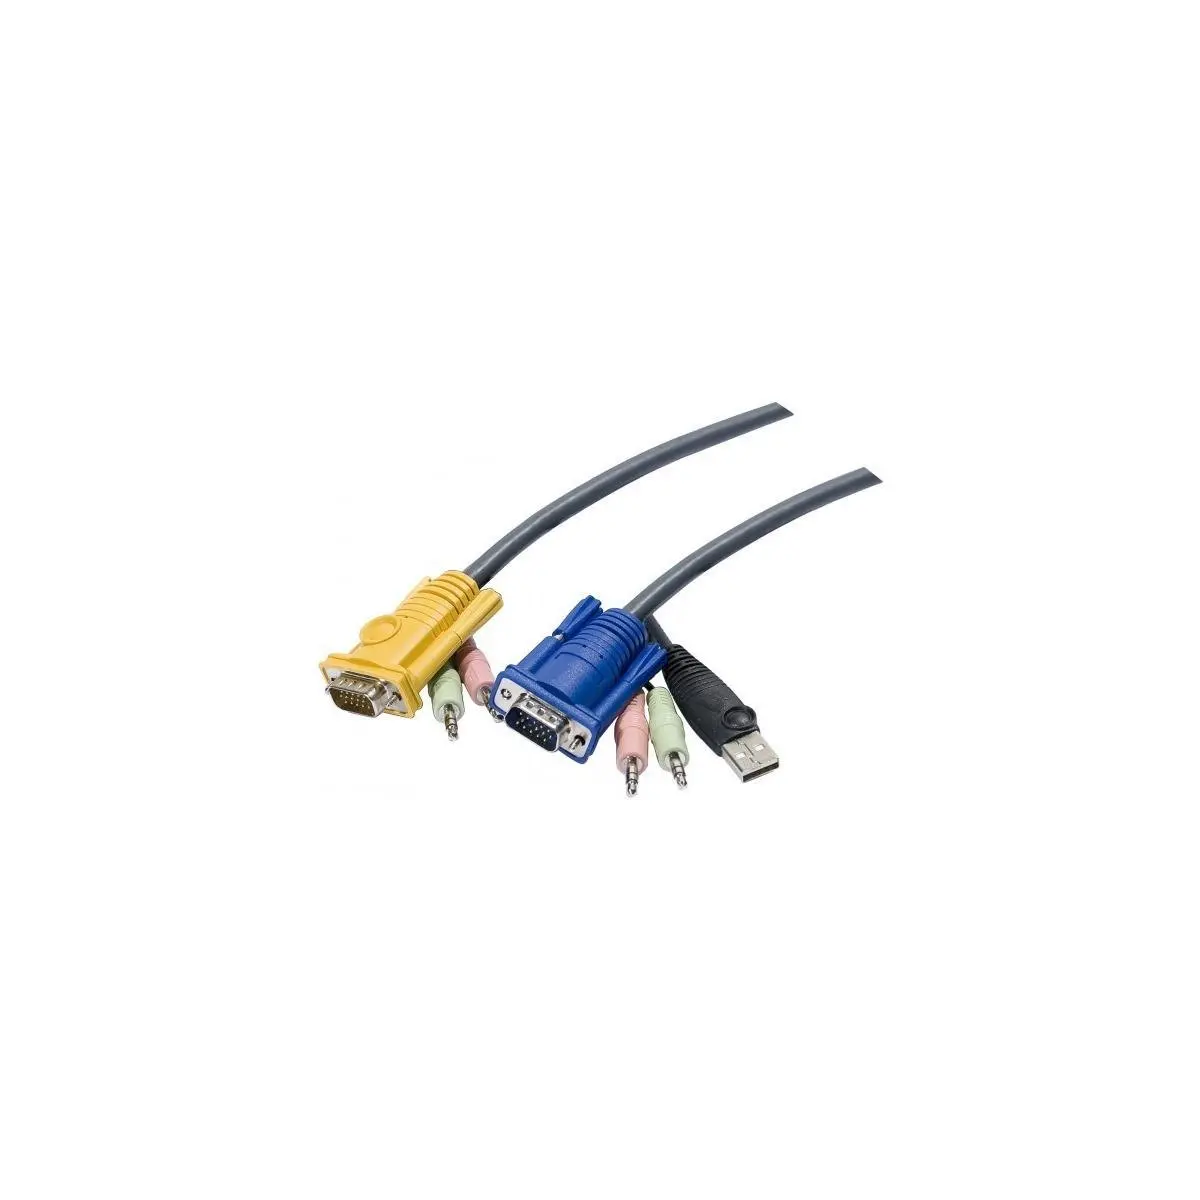 Cable E7 kvm ATEN 2L-53xxU VGA-USB-Audio - 1,80M photo du produit